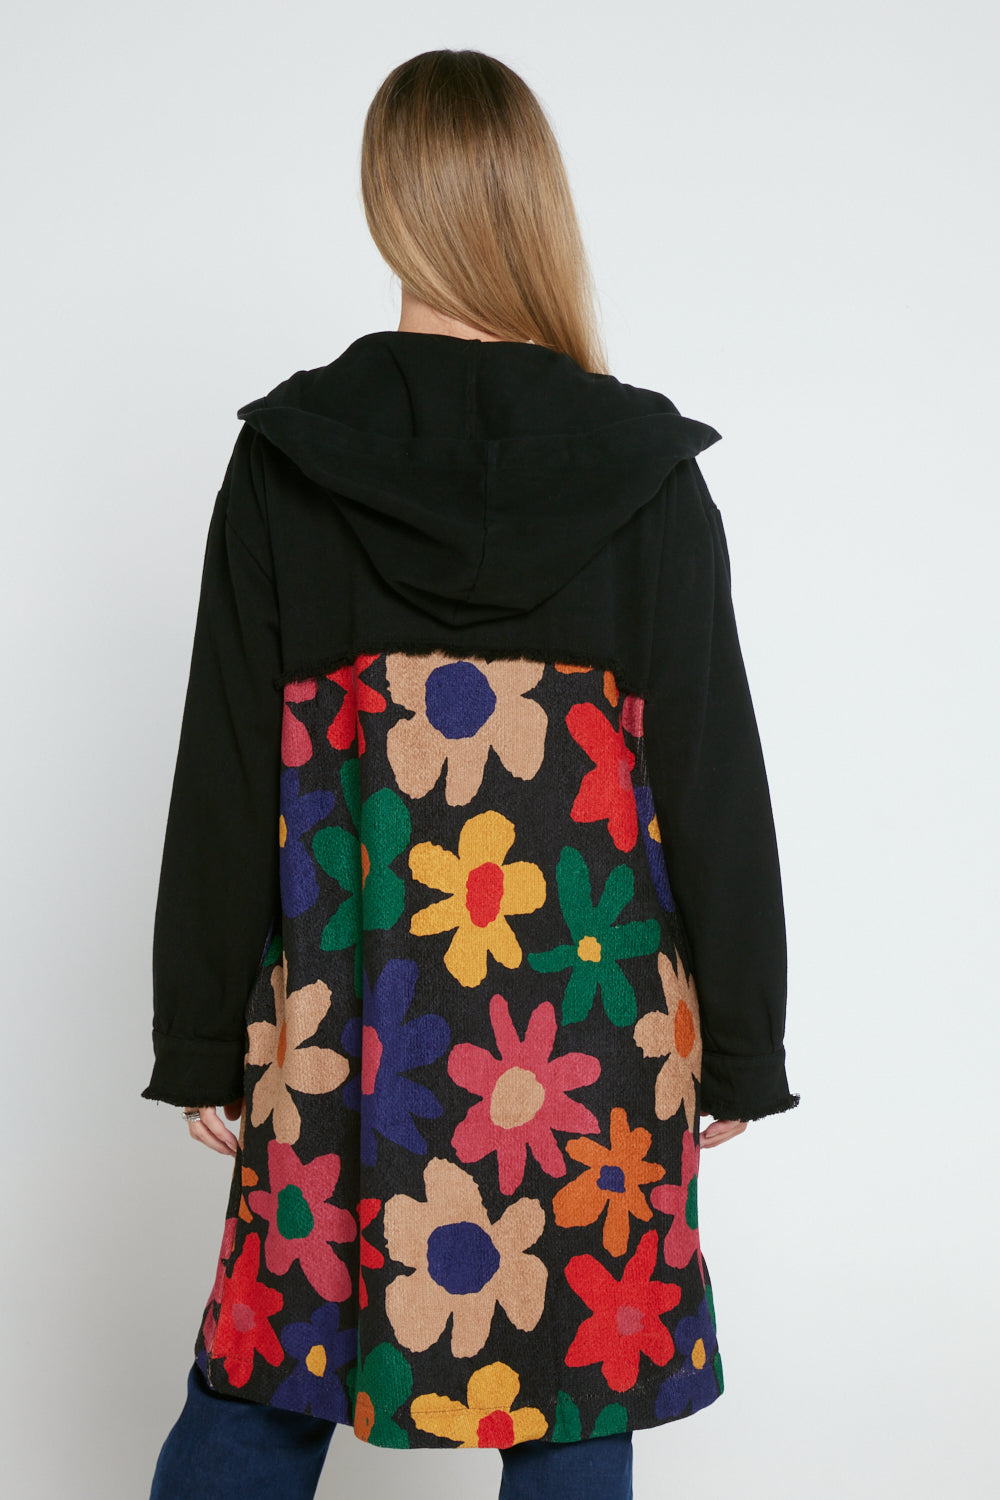 Maggie Knit & Canvas Coat - Black/Floral